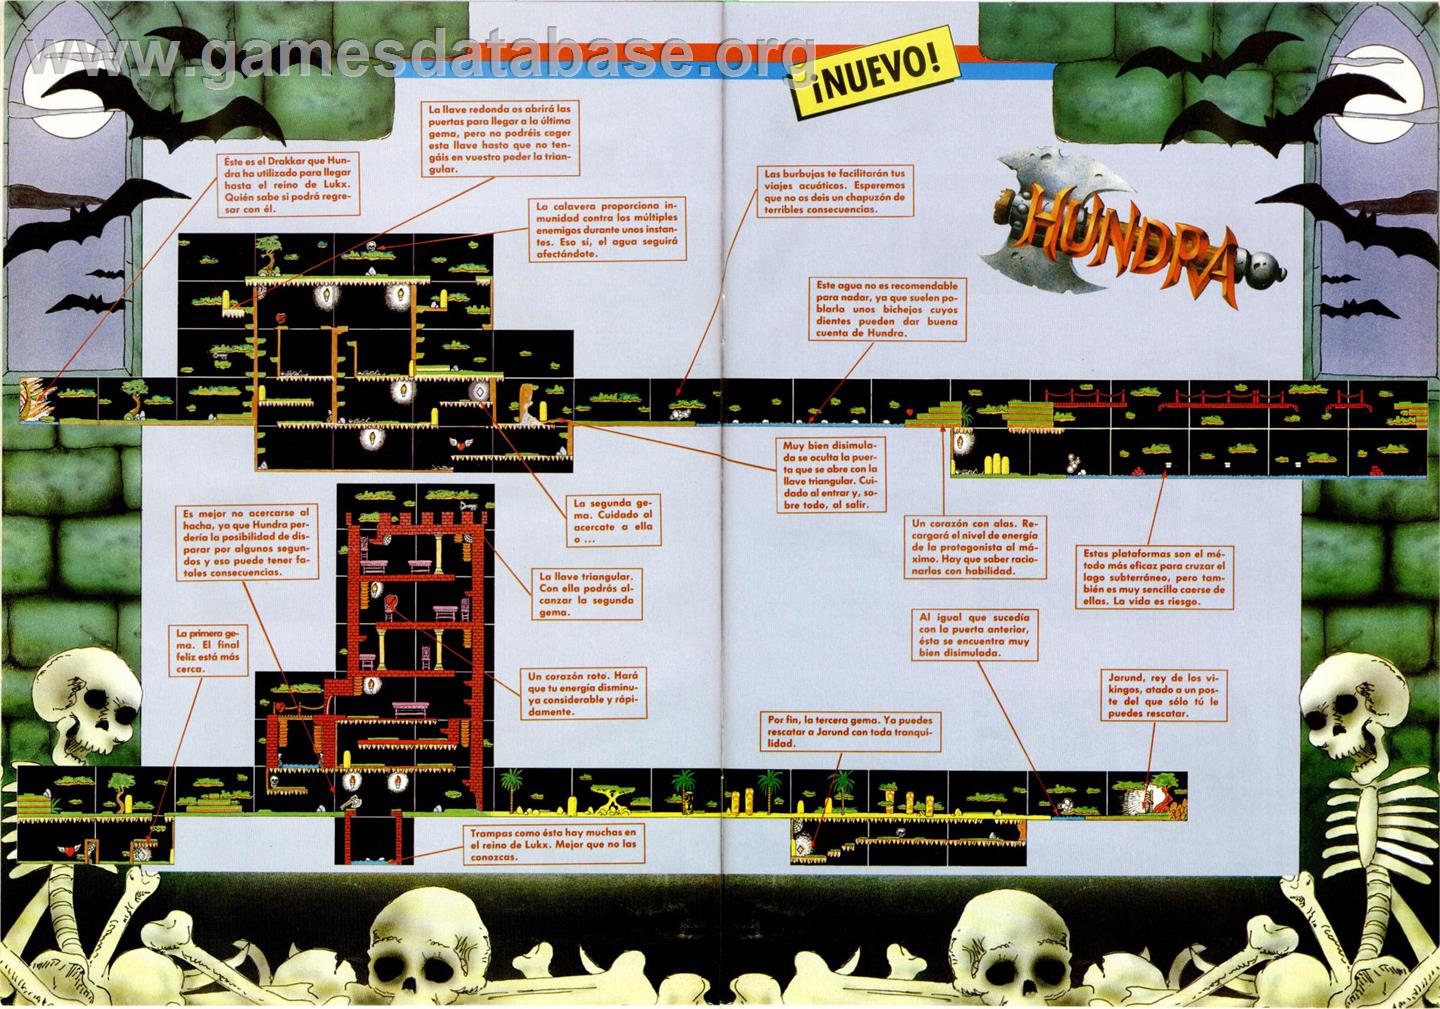 Hundra - MSX 2 - Artwork - Map